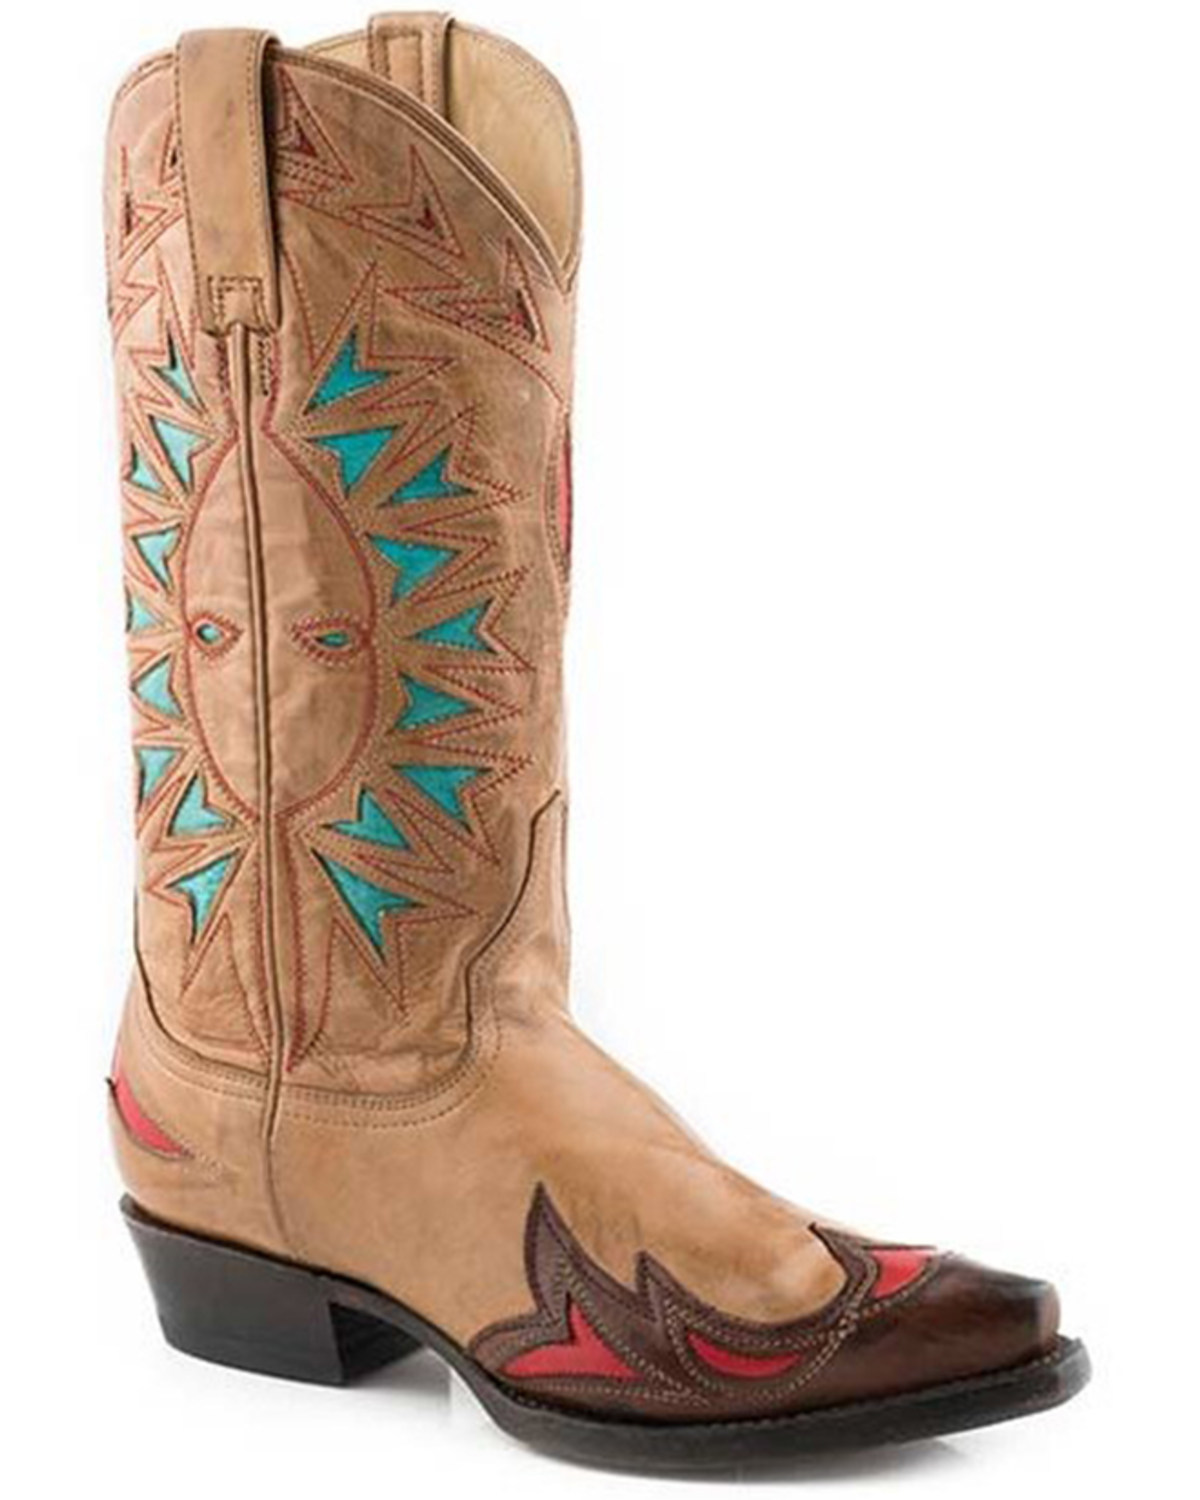 Stetson Women's Penny Western Boots - Snip Toe